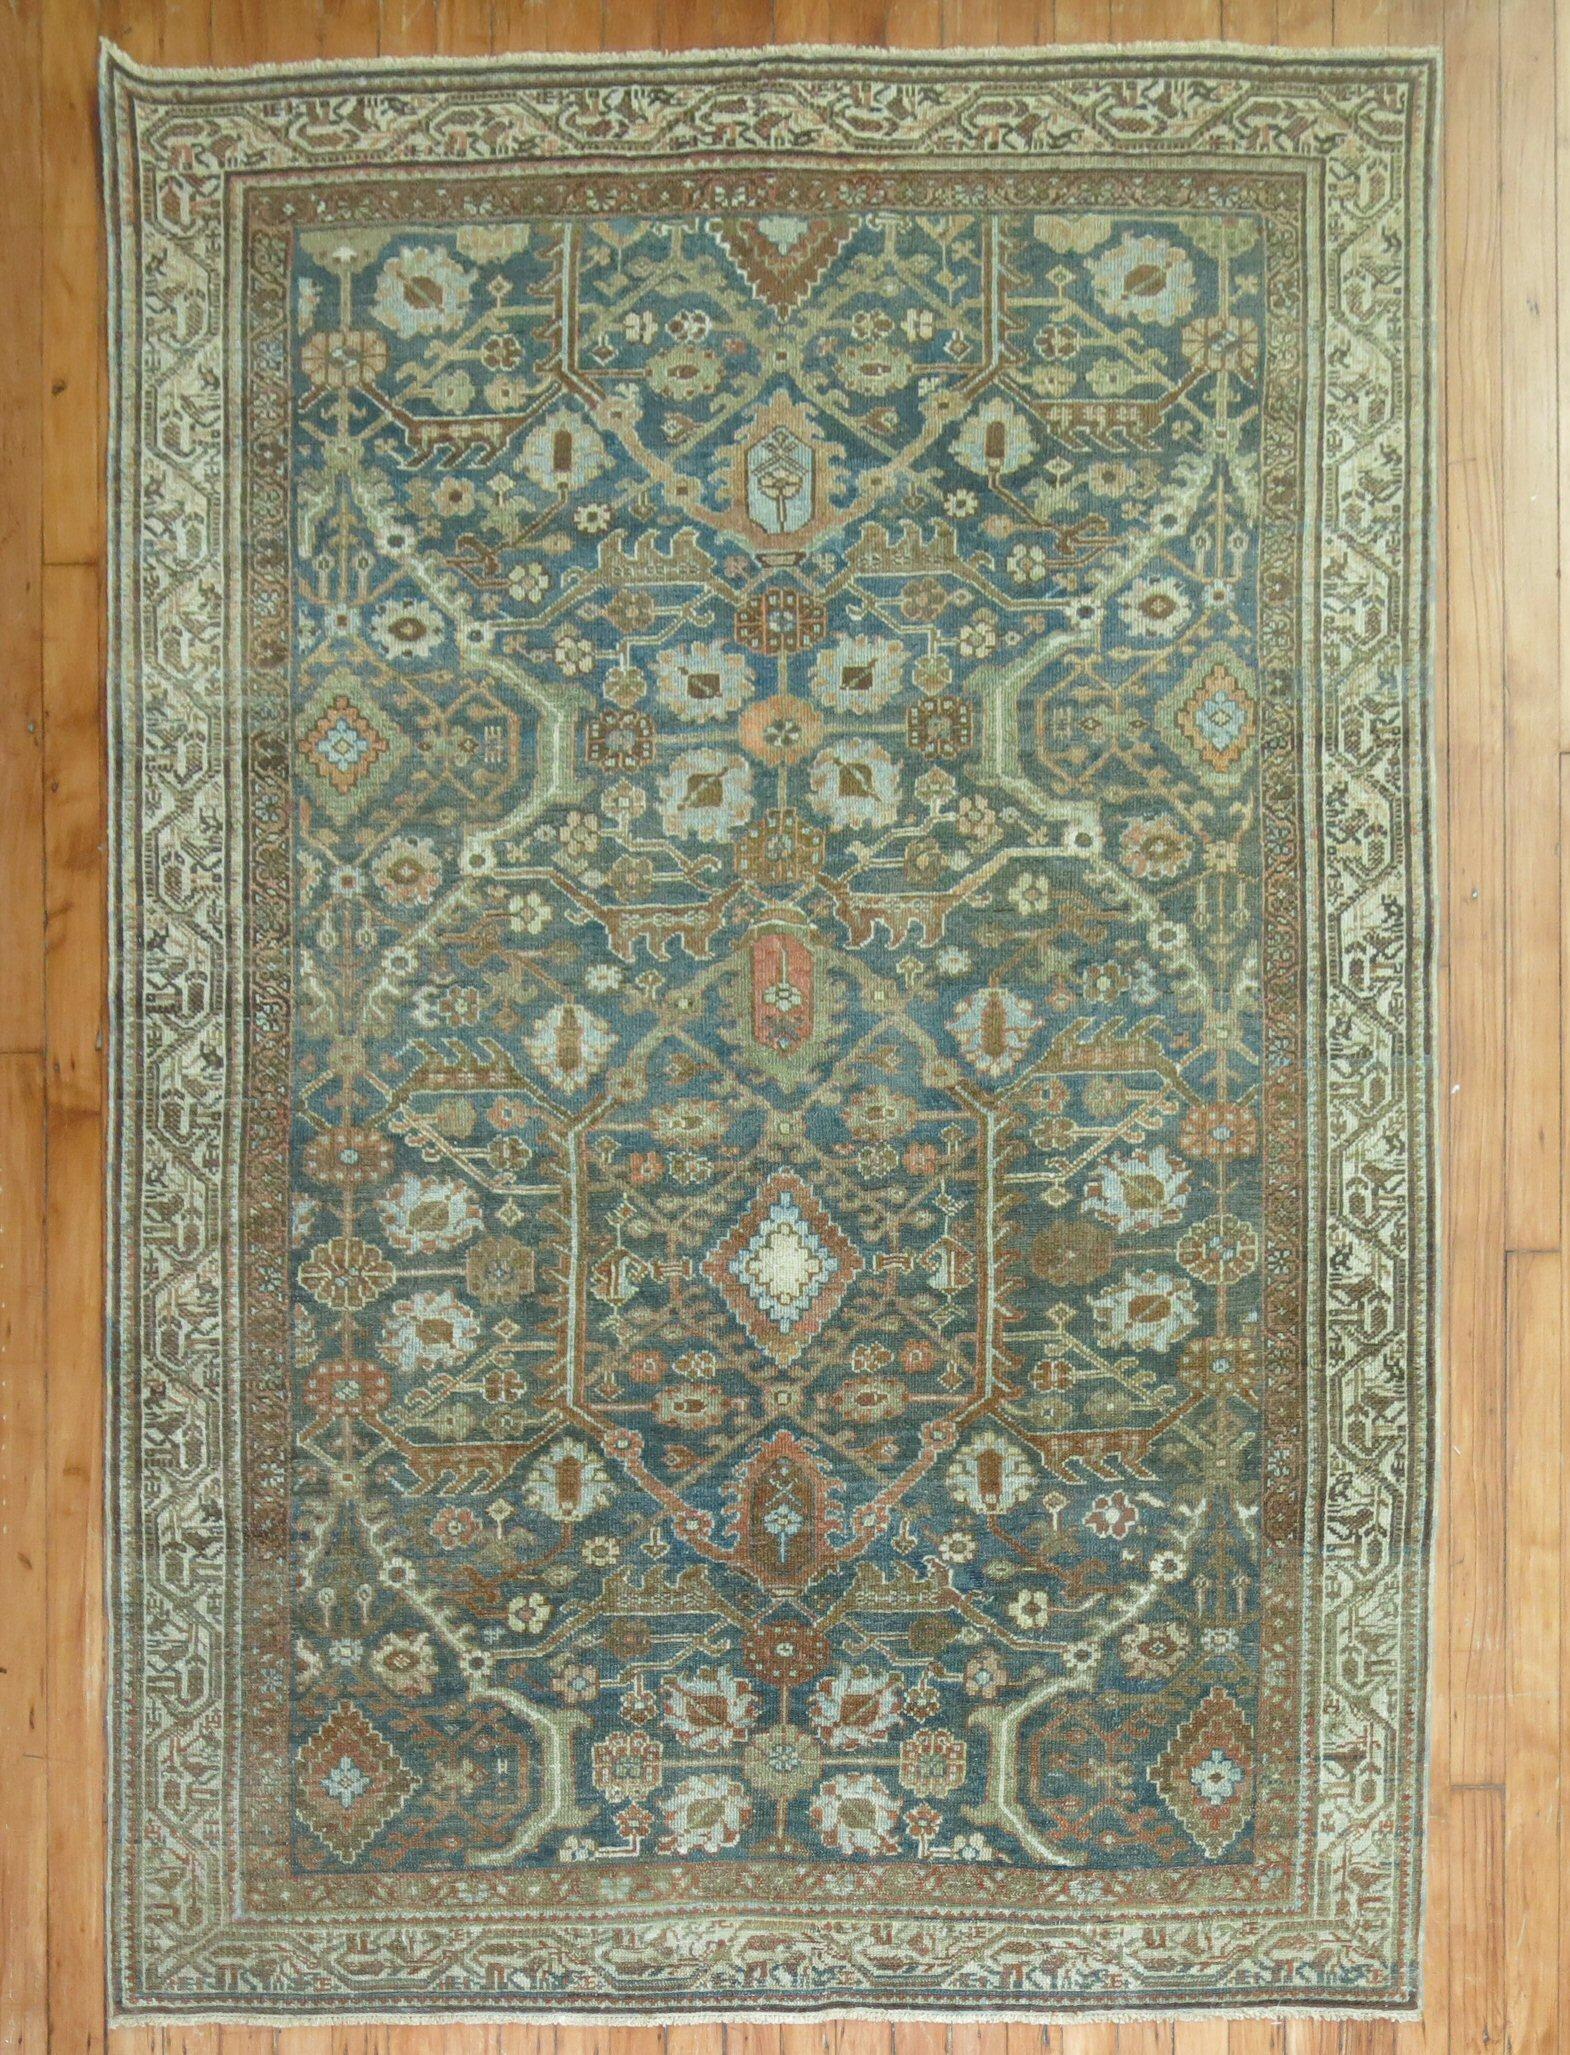 Persischer Malayer-Teppich in Grün-, Elfenbein- und Kupfertönen in Akzentgröße aus dem frühen 20

Maße: 4'6